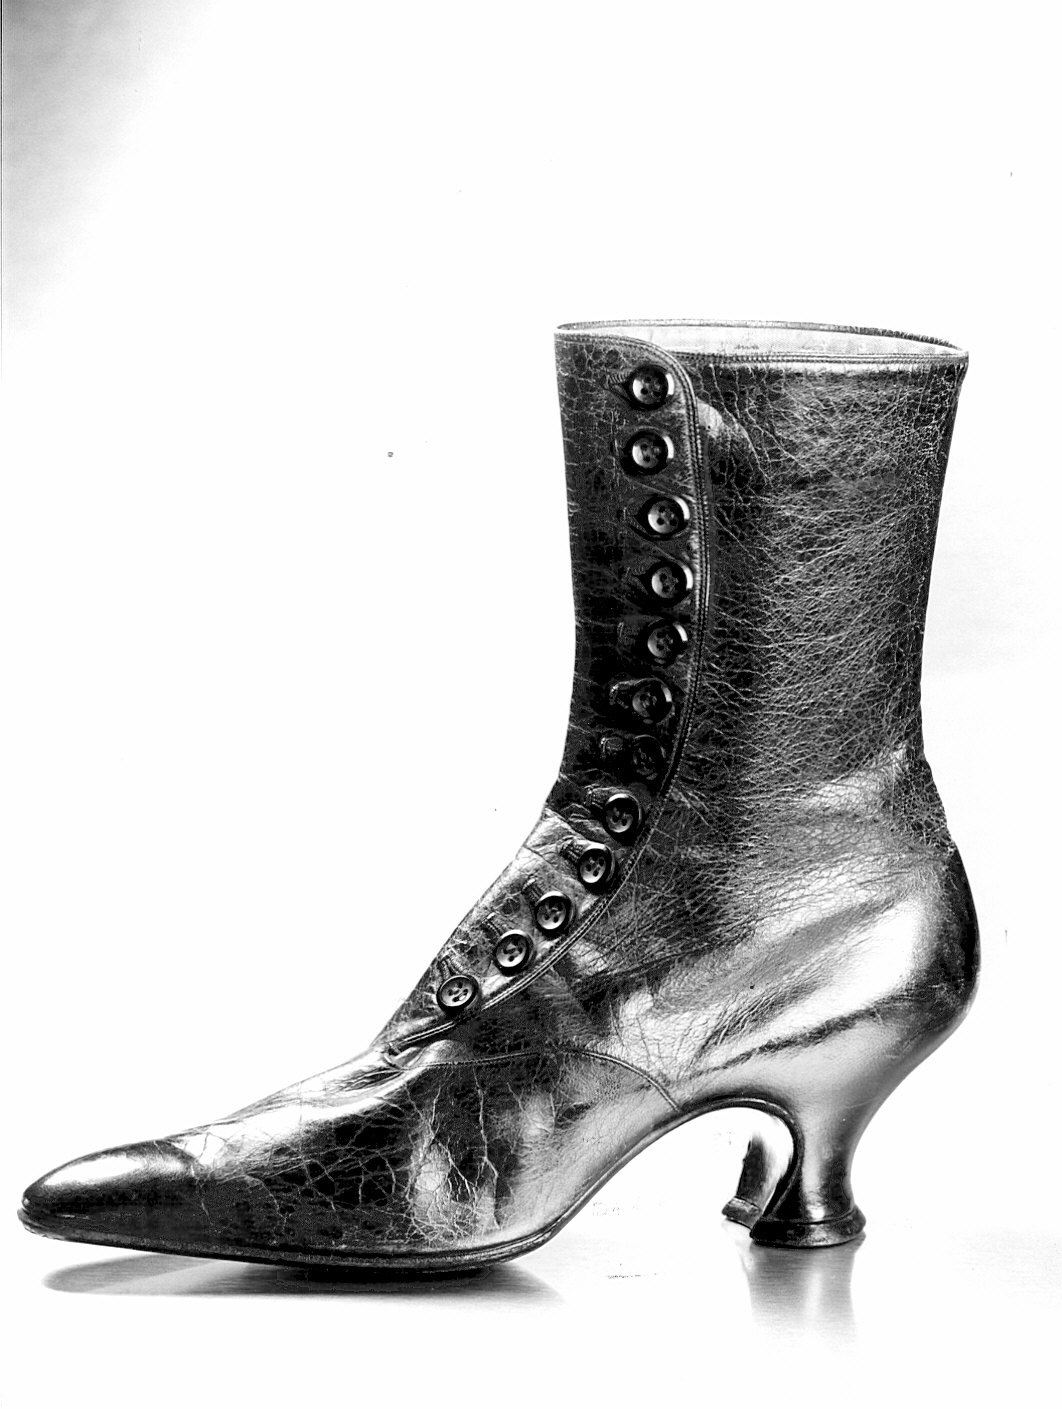 Non rilevato (scarpa femminile) - manifattura (1907/ 1907)